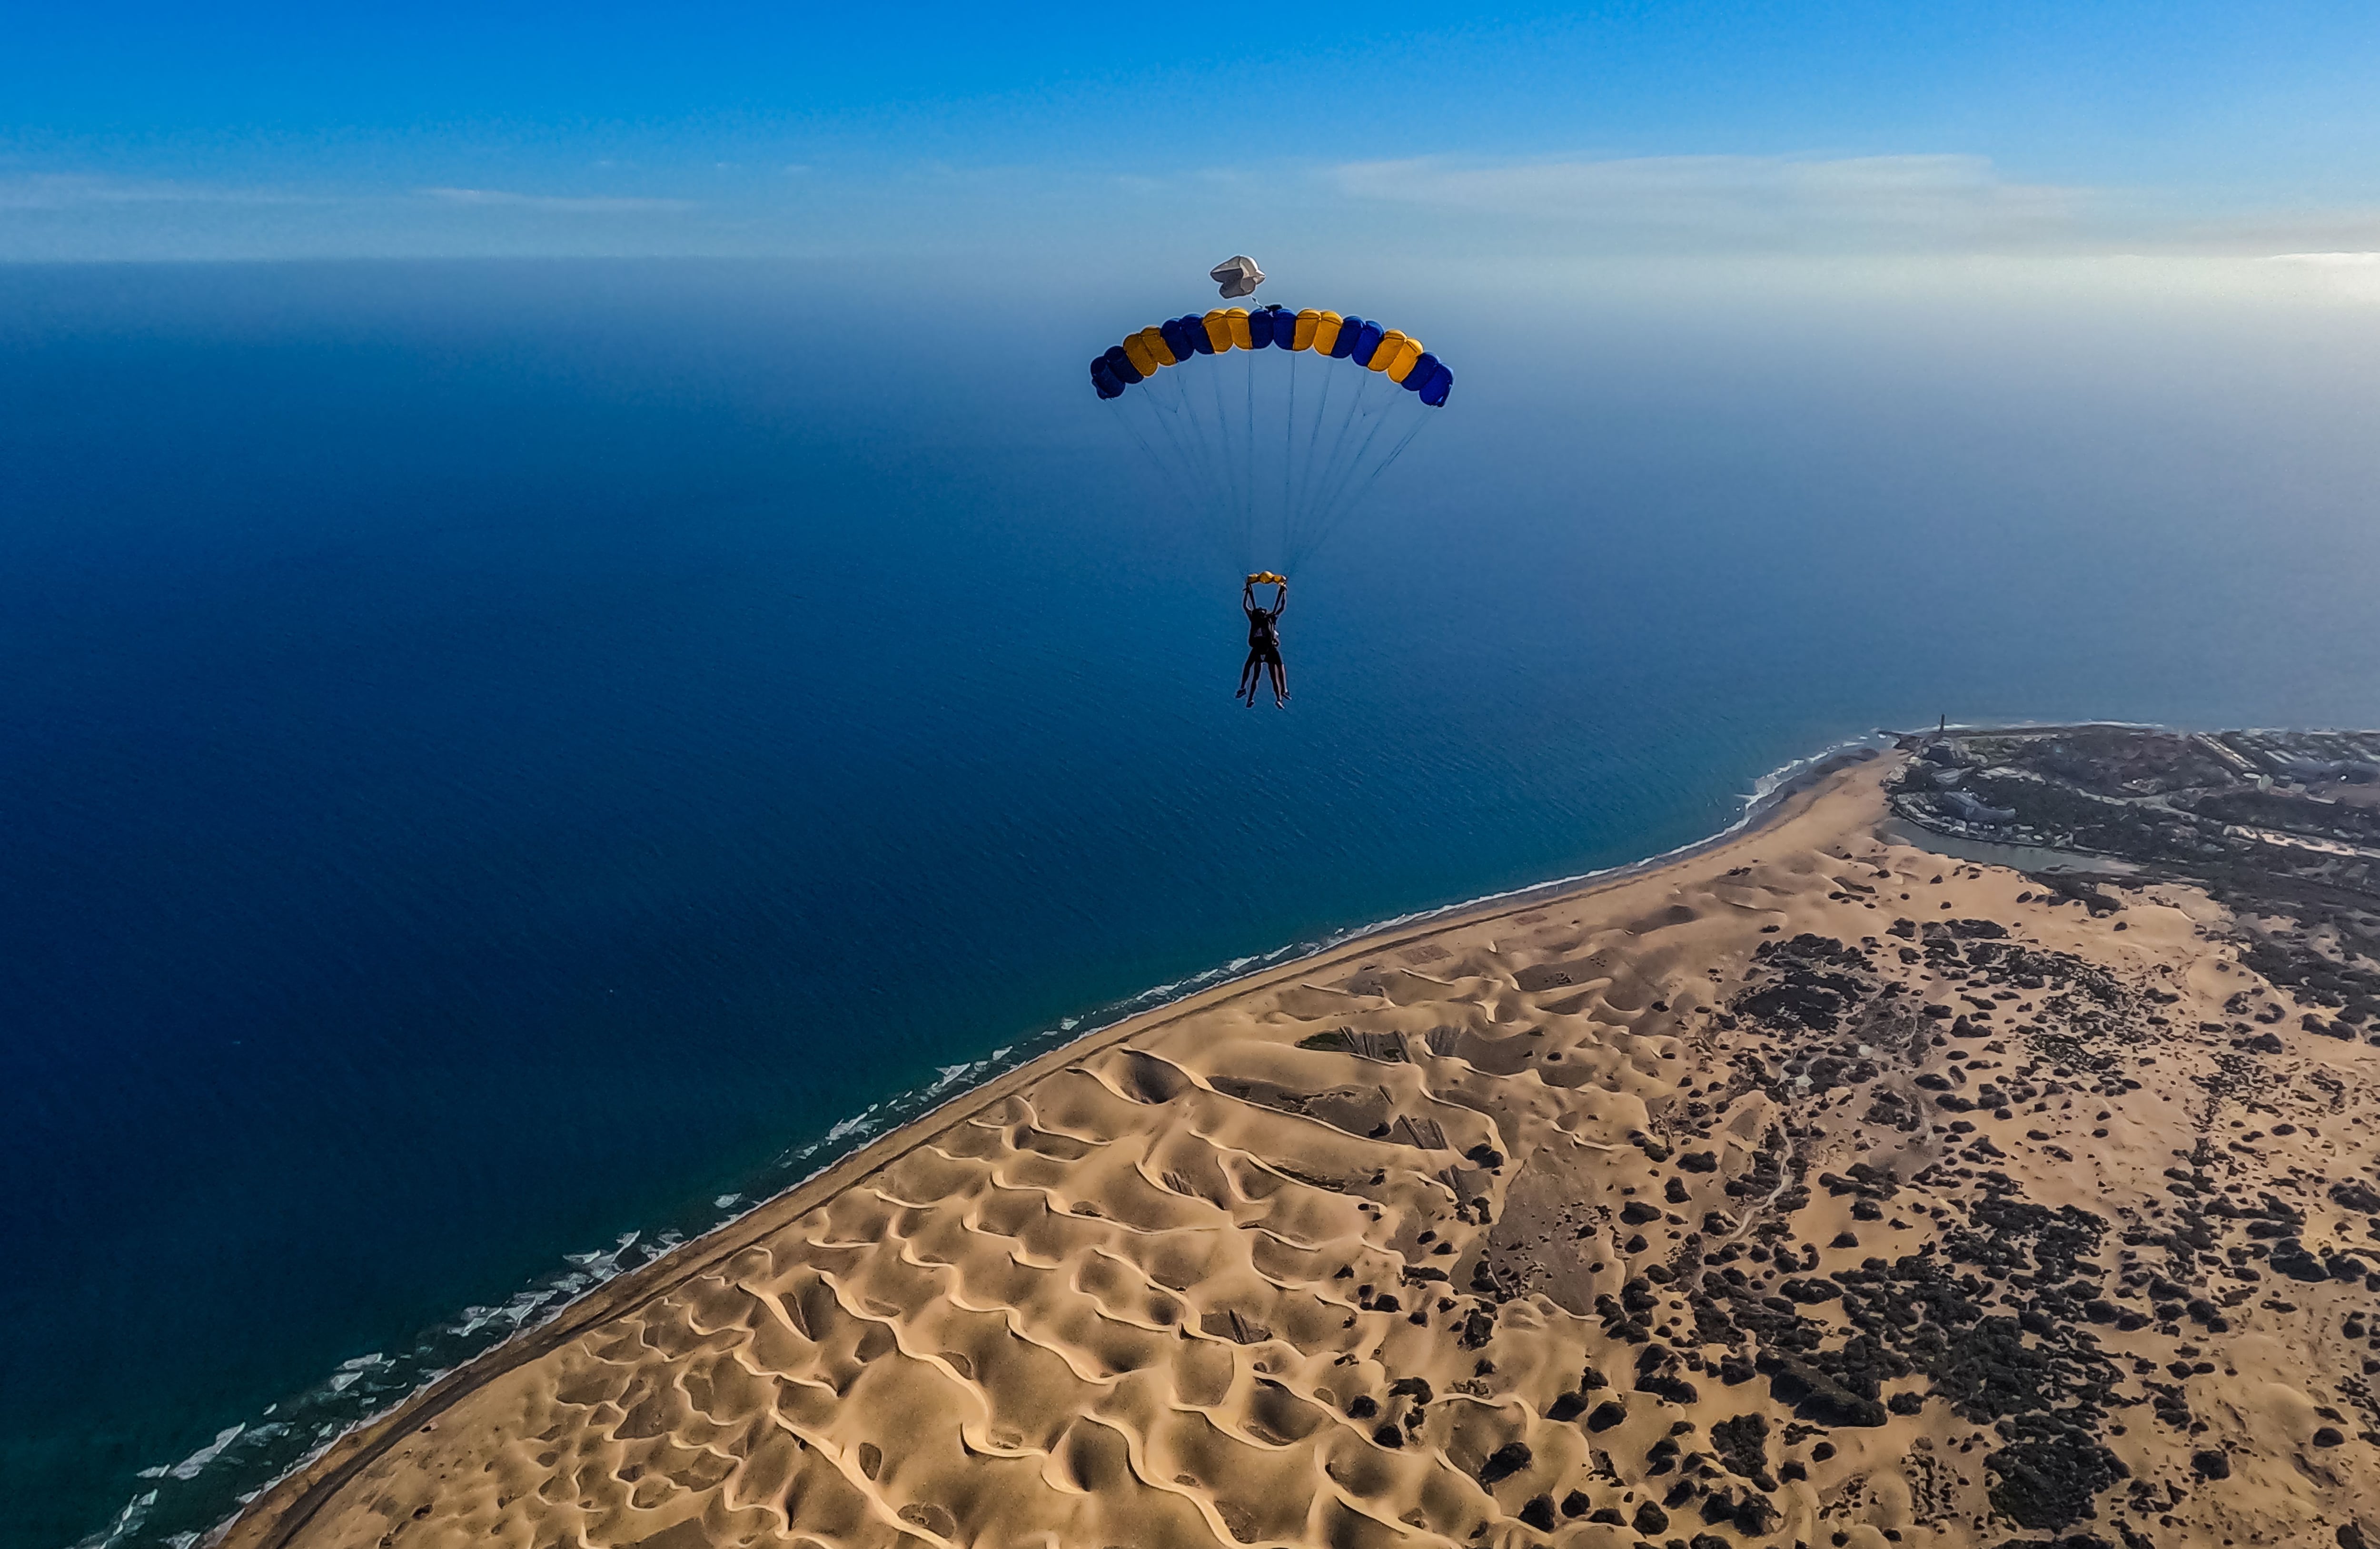 Sobrevolar Maspalomas en paracaídas, sobar anchoas y más experiencias costeras por España para una primavera con mayúsculas